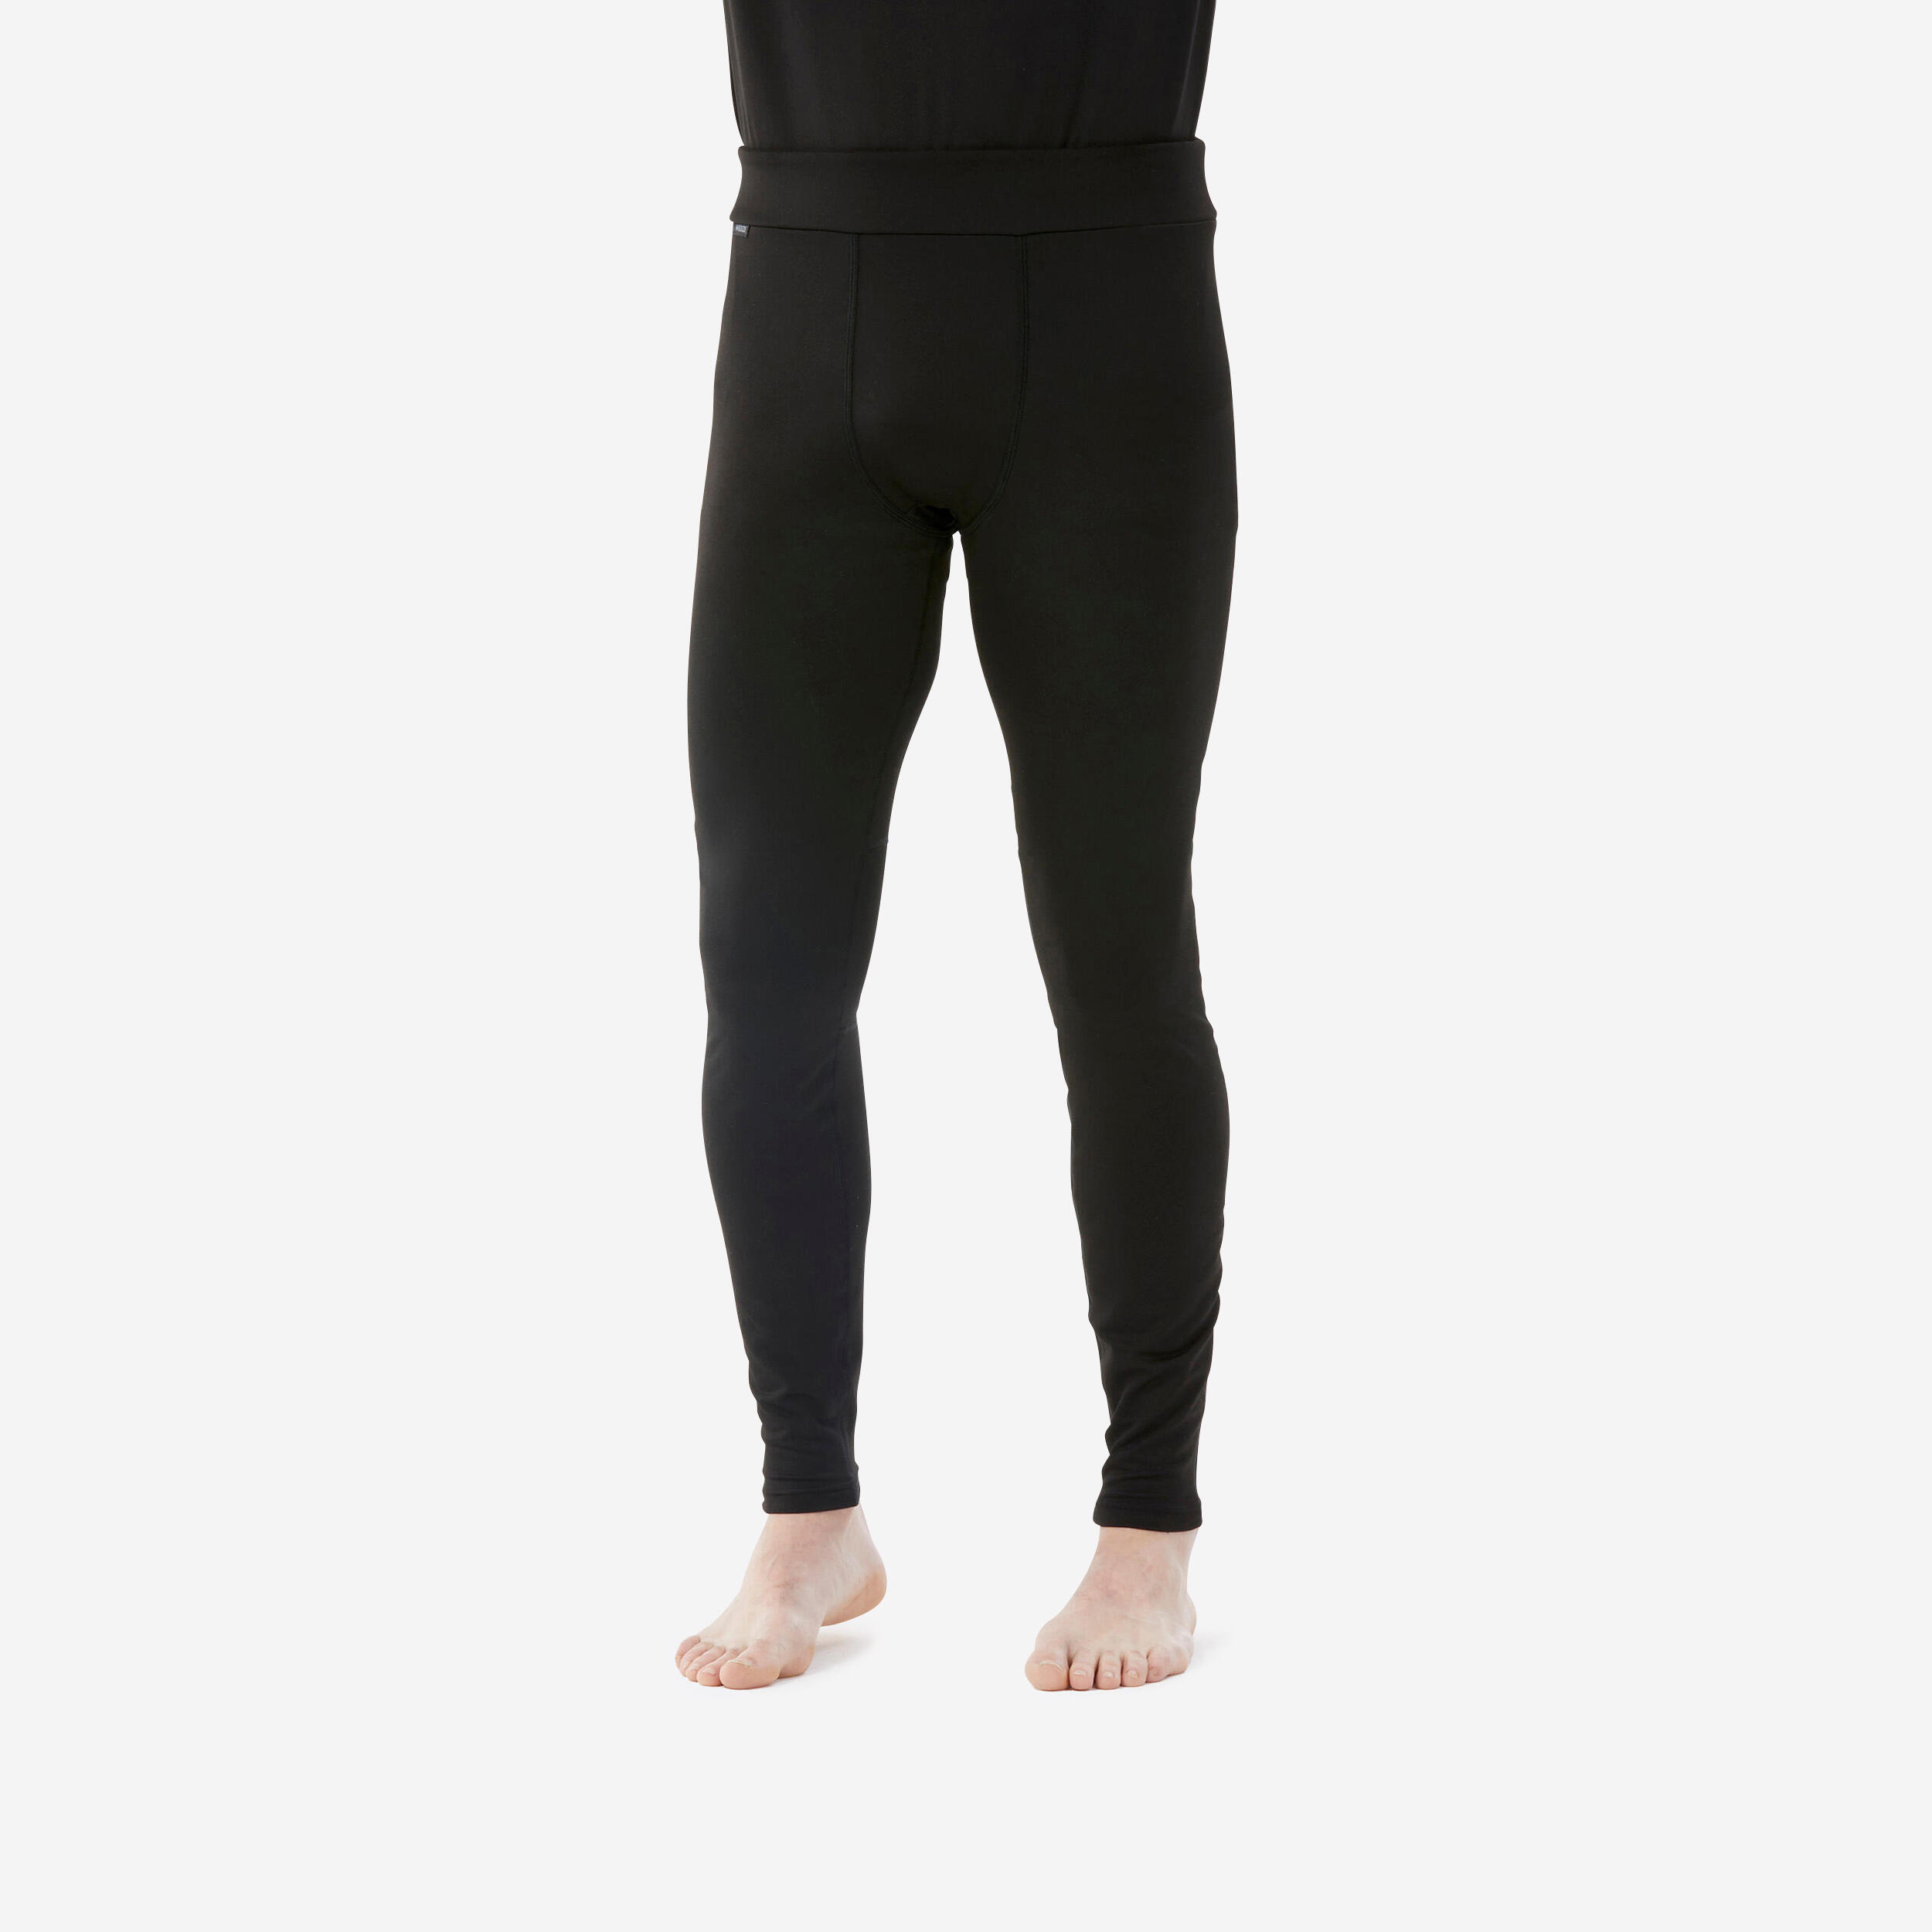 Men Thermal Pant for Skiing - BL500 Black